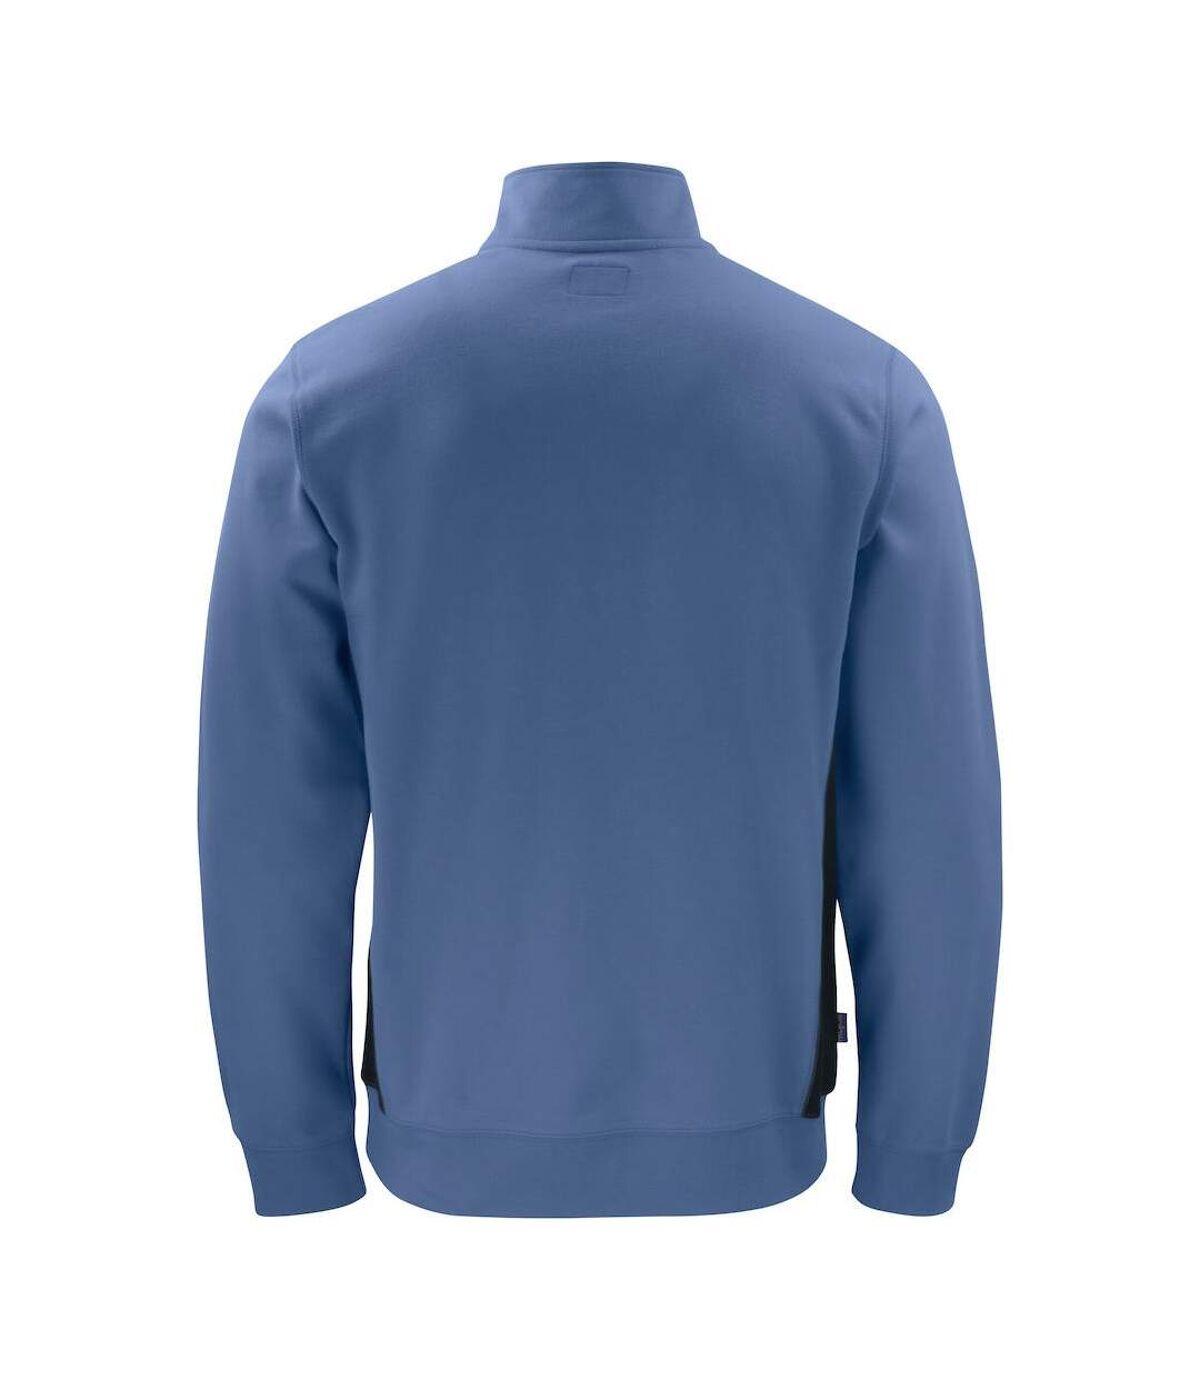 Projob Mens Half Zip Sweatshirt (Sky Blue)